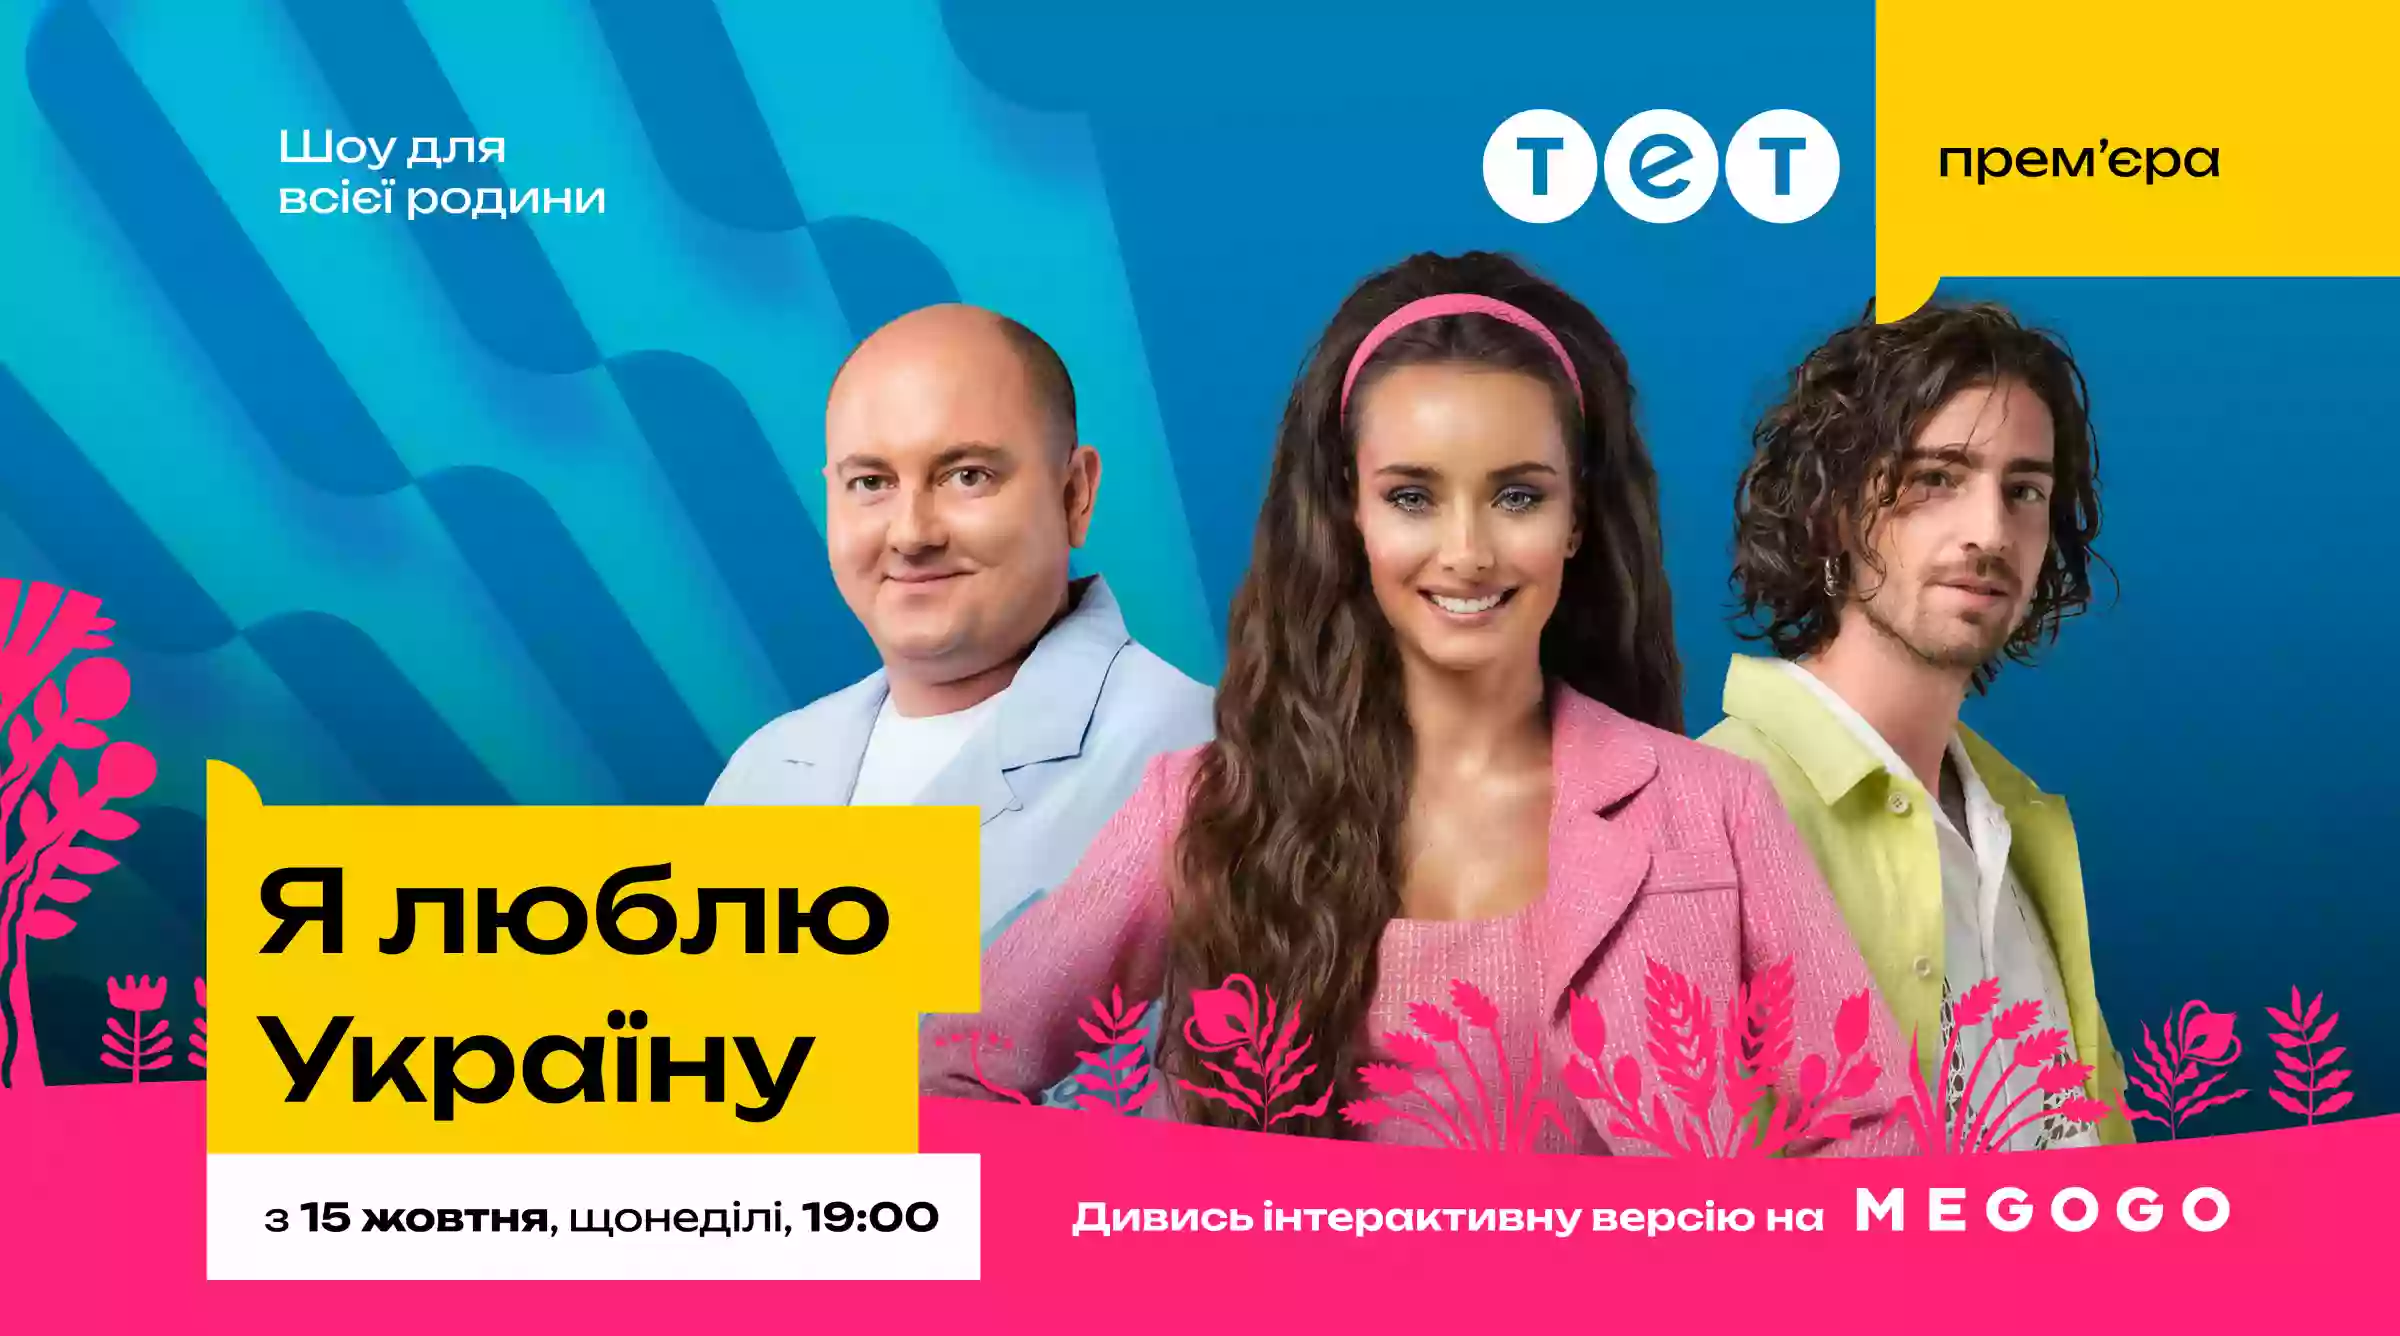 Телеканал ТЕТ і Megogo пропонують глядачам «Я люблю Україну» взяти участь в інтерактиві під час трансляції шоу